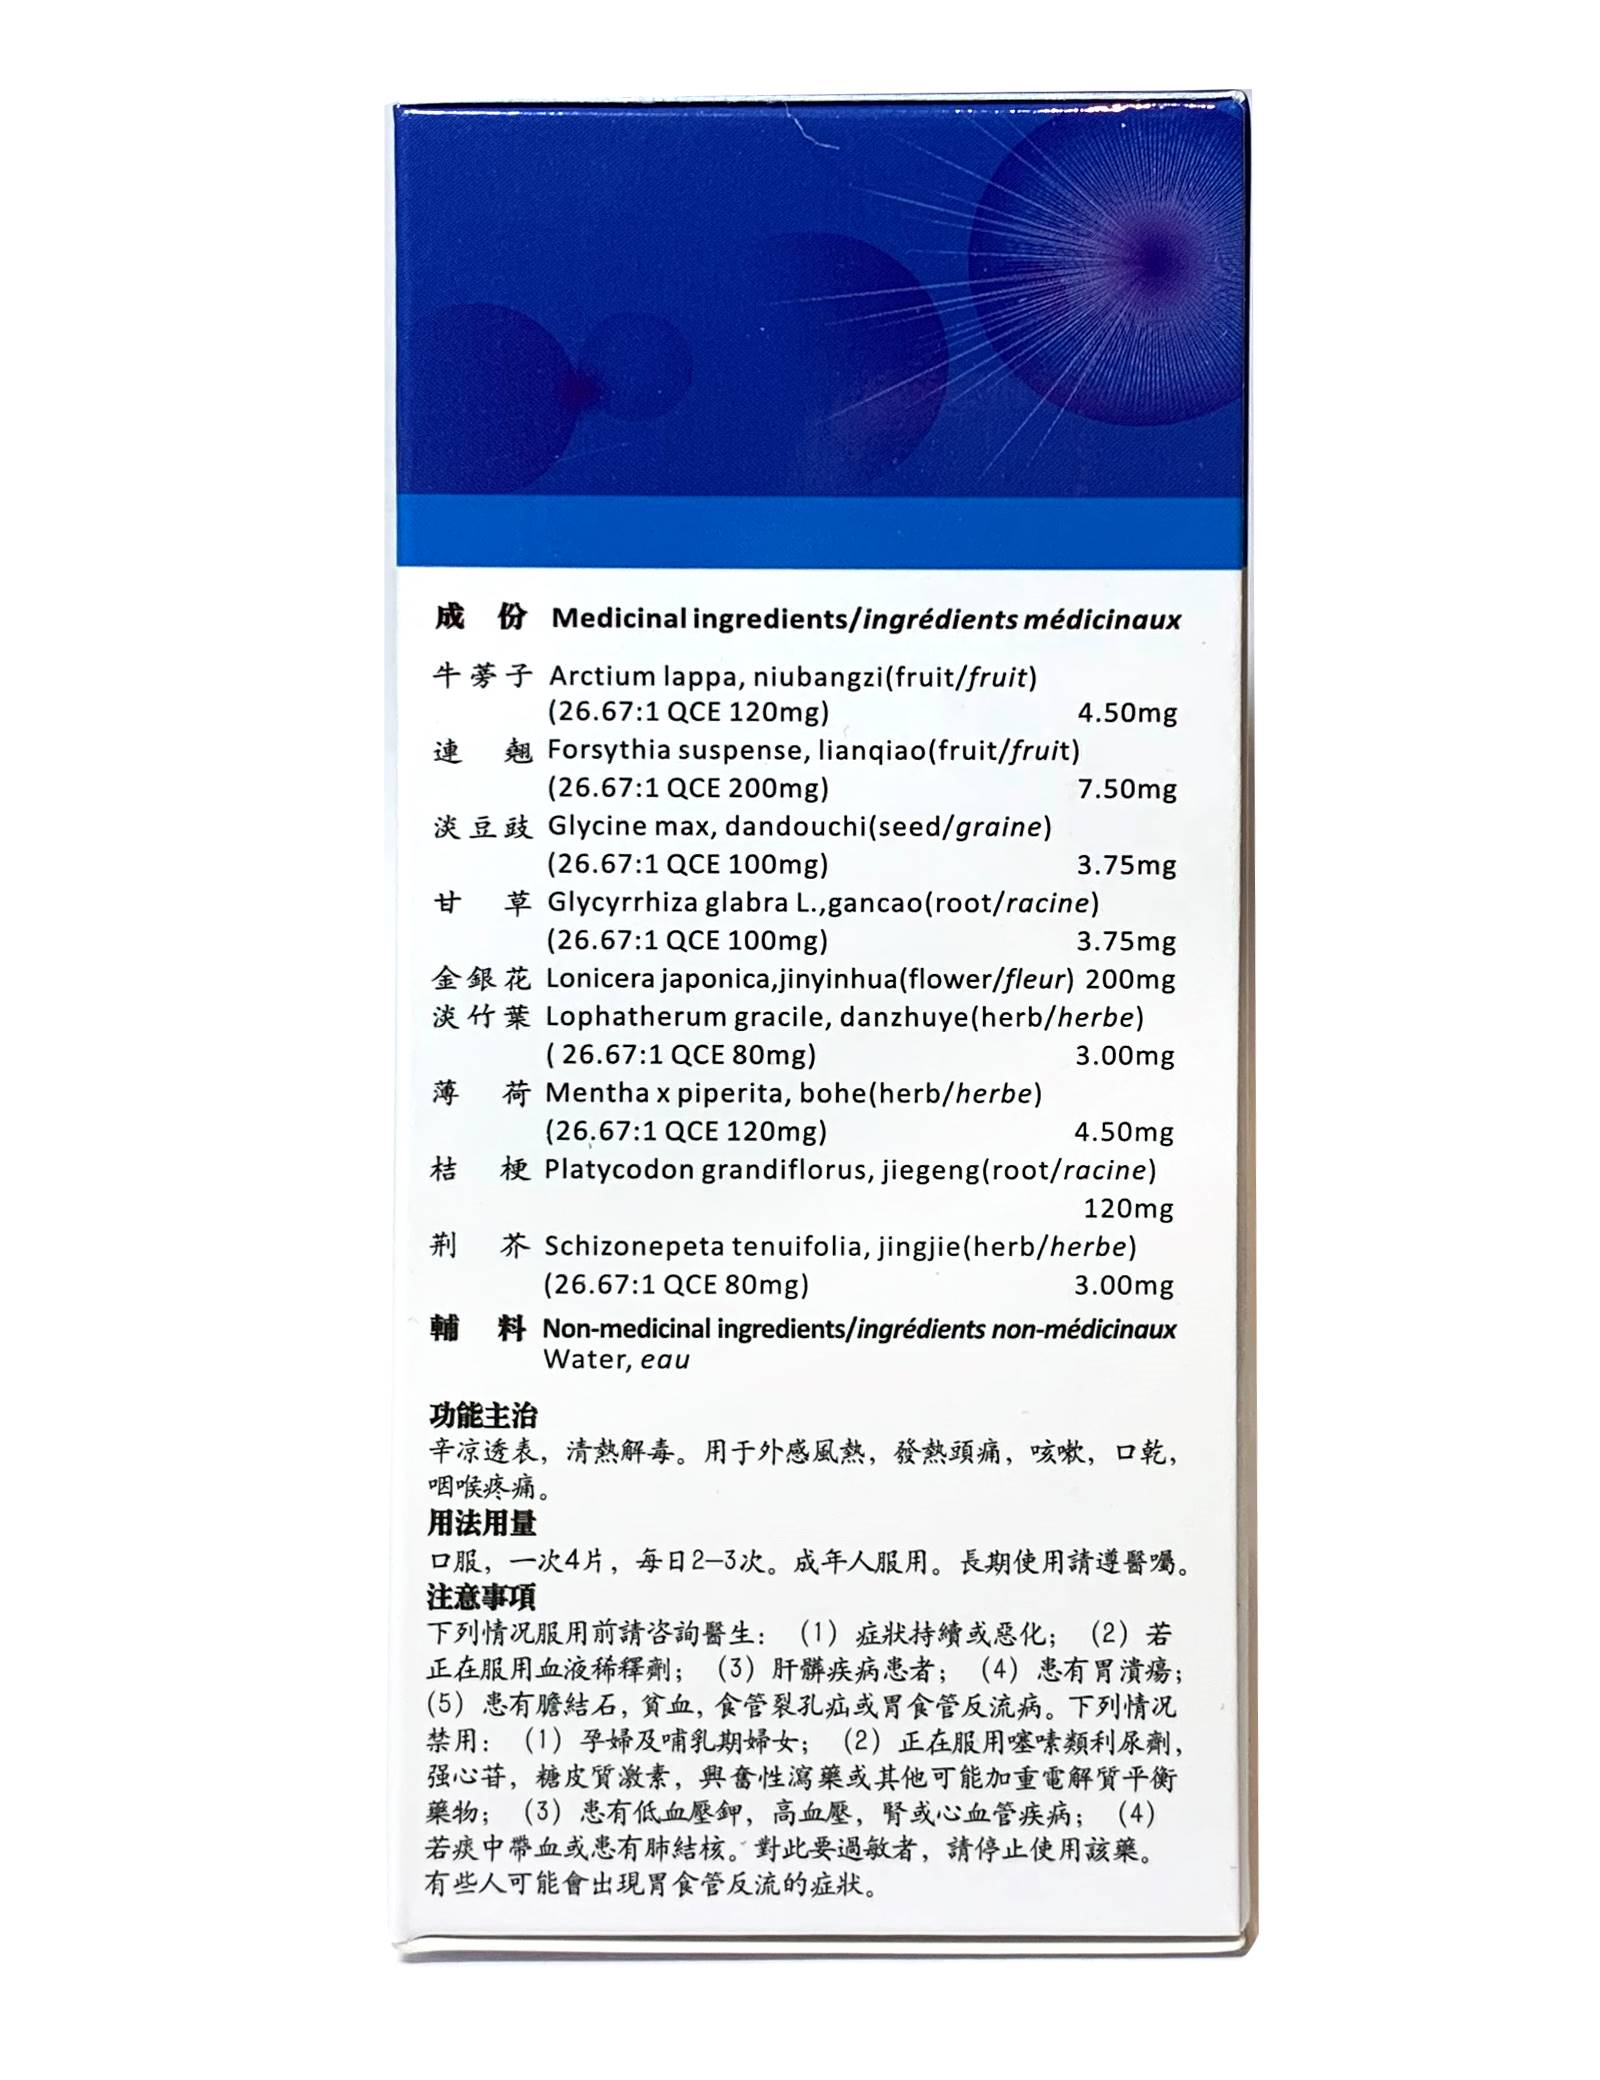 QiangLi YinQiao Tablets